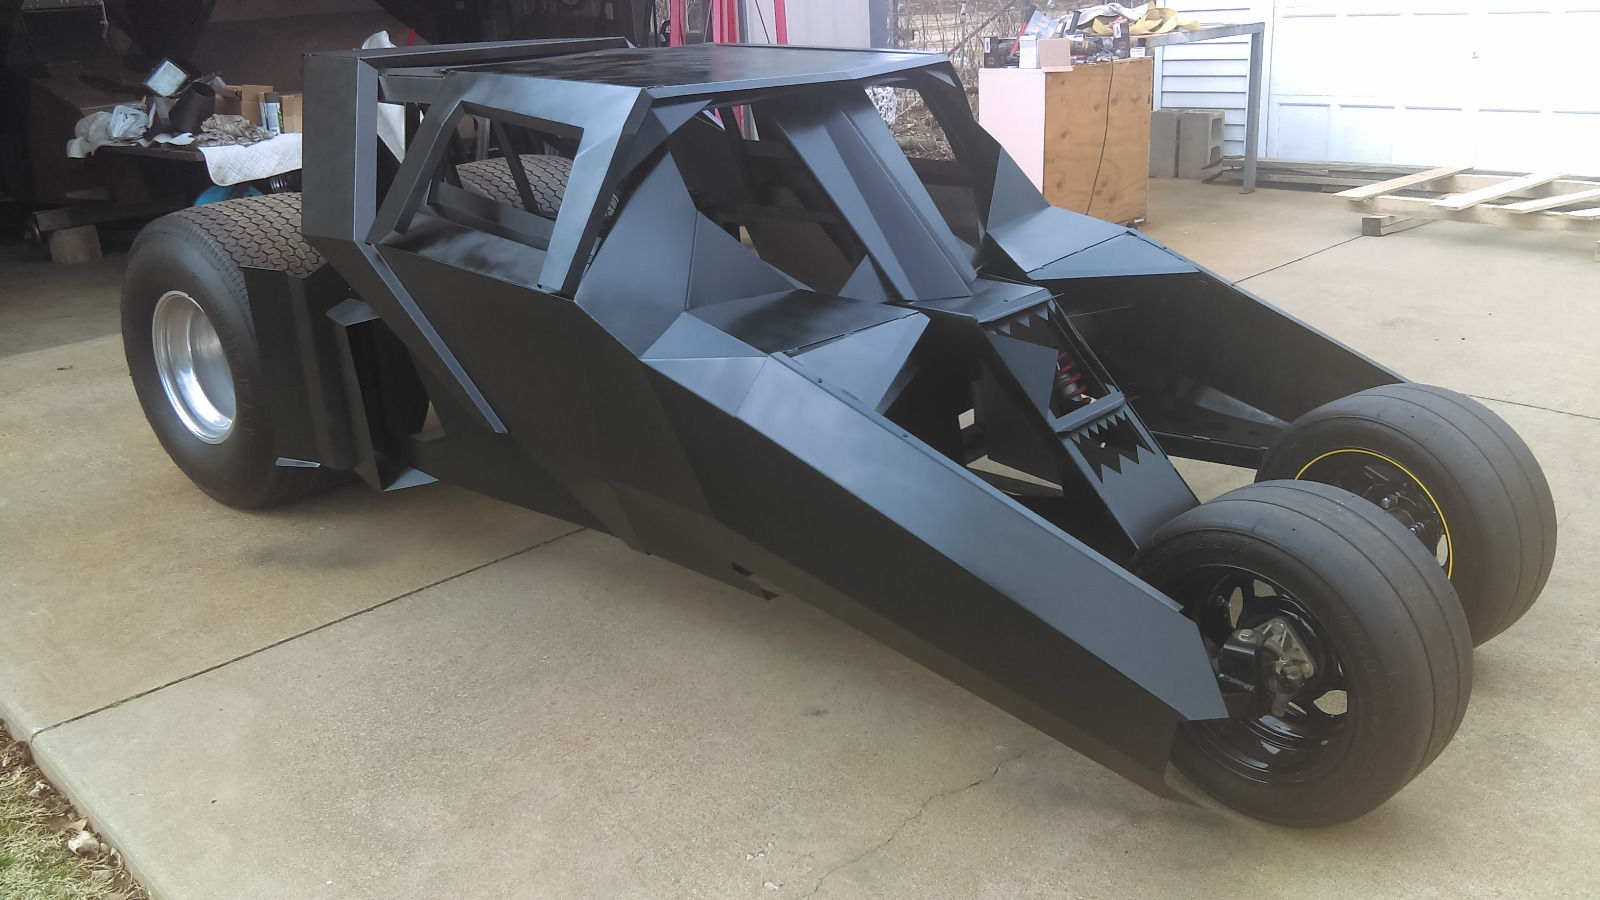 2/3 Scale 1/3 Complete: Mini Tumbler Batmobile Project